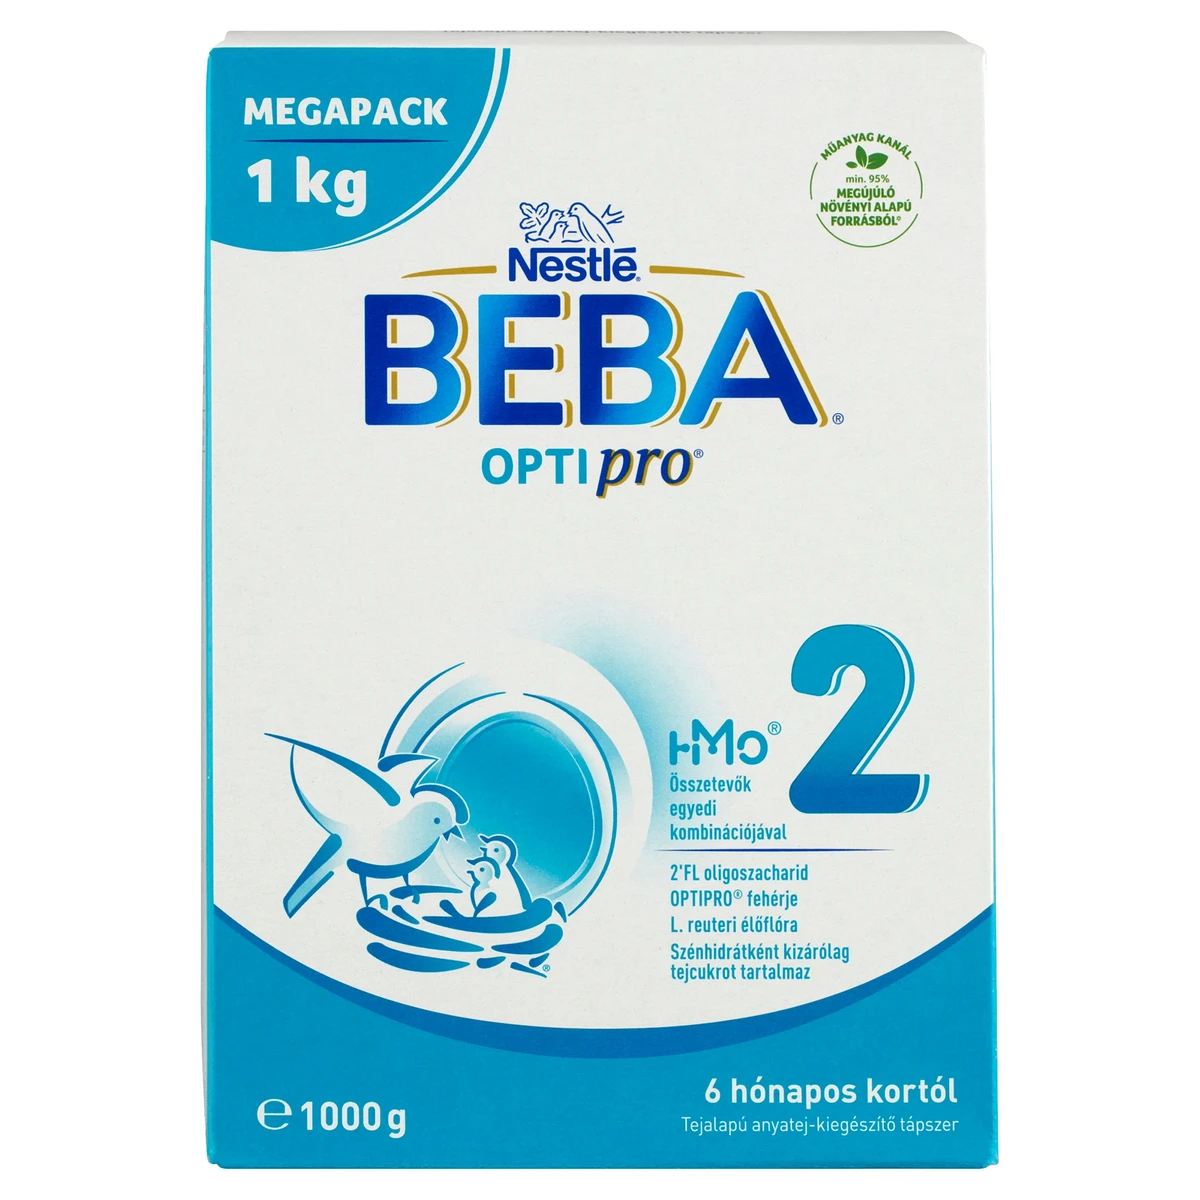 BEBA Pro 2 tejalapú anyatej kiegészítő tápszer 6 12 hónapos korig, 1 kg